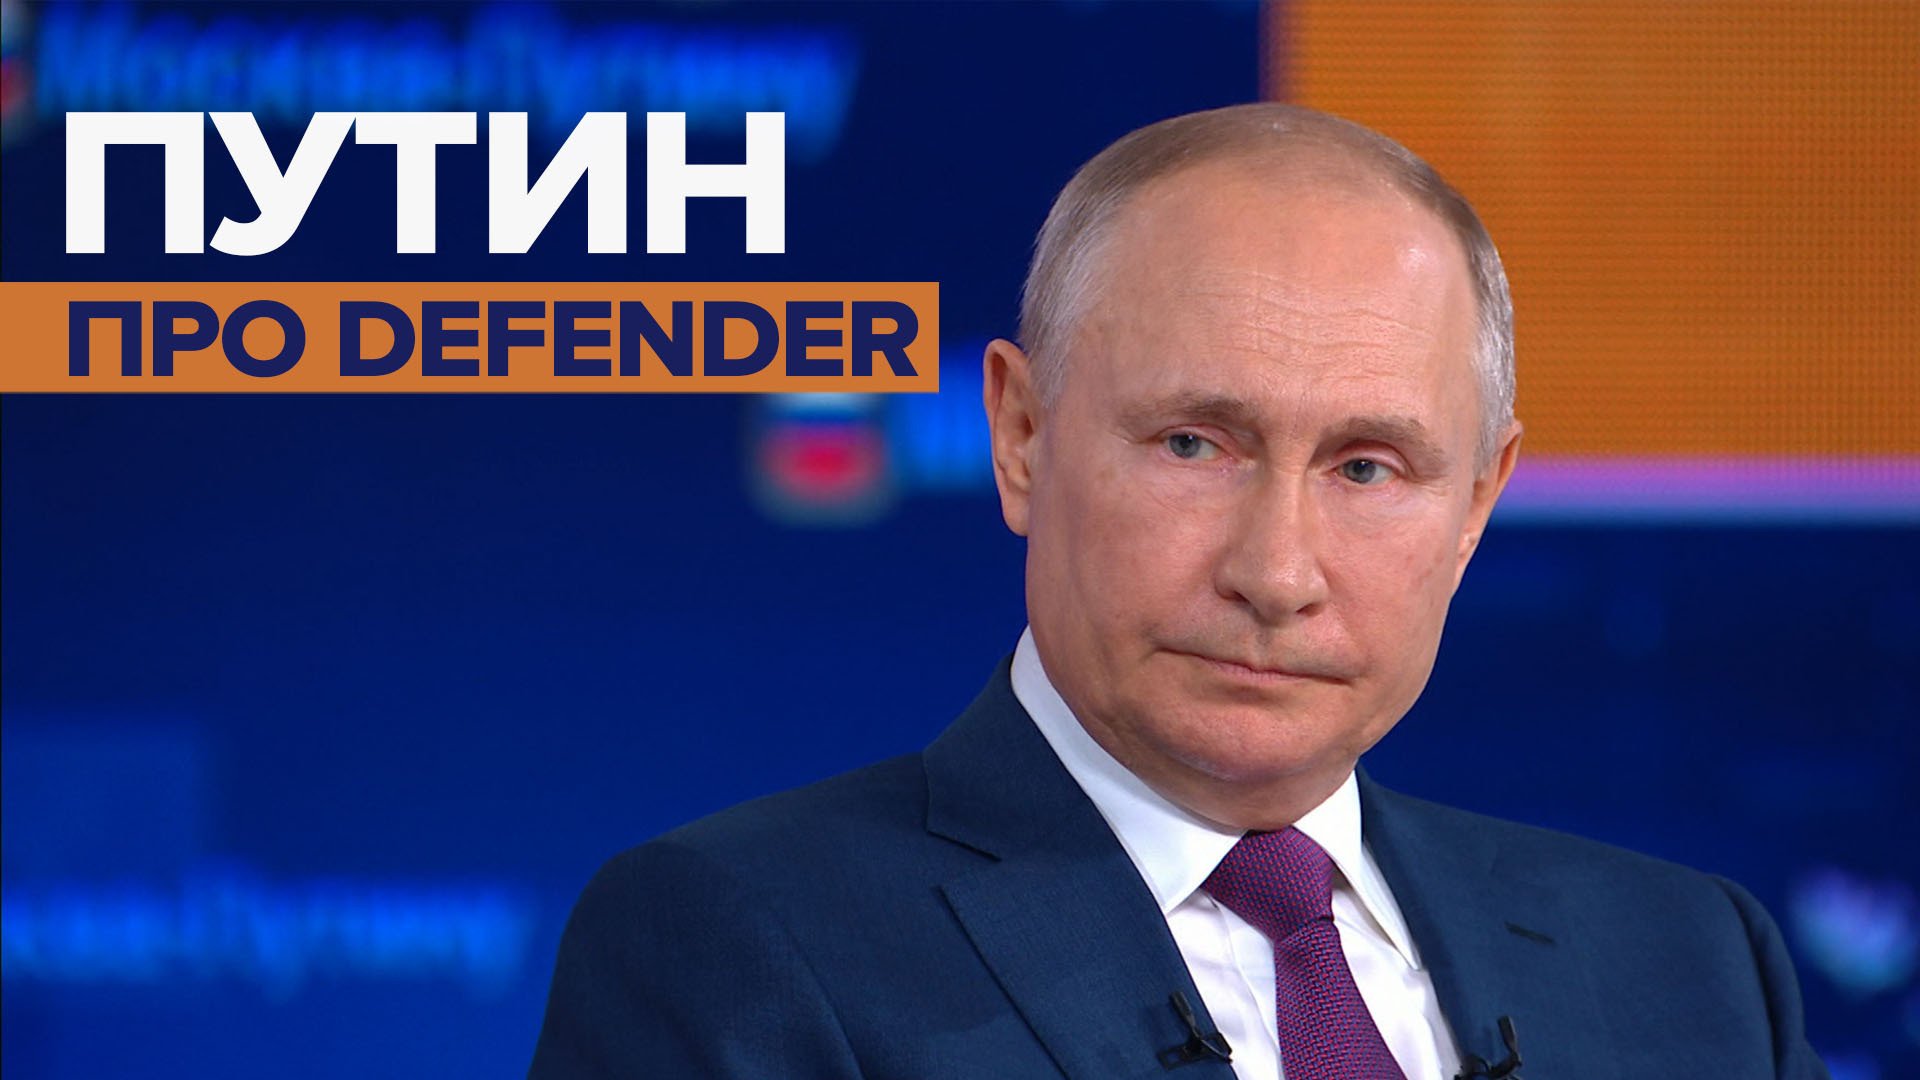 «Это провокация»: Путин прокомментировал ситуацию с британским эсминцем